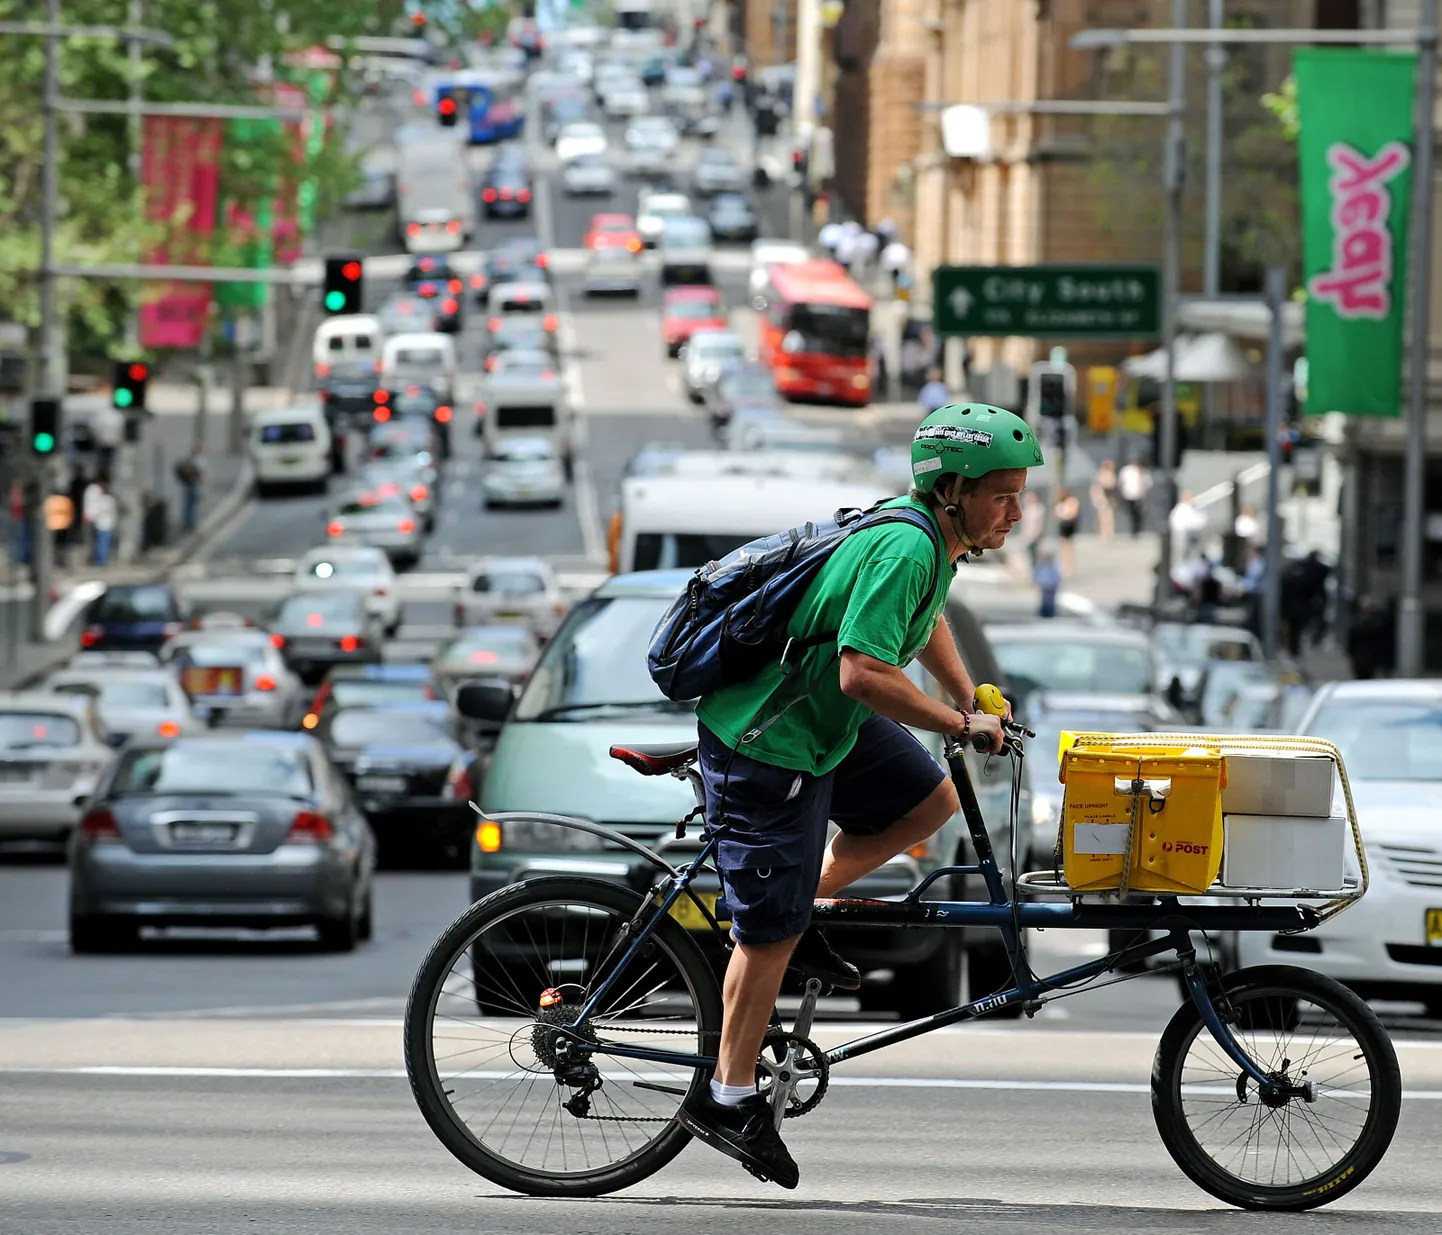 Jalgrattakuller keset autoliiklust Sydneys.